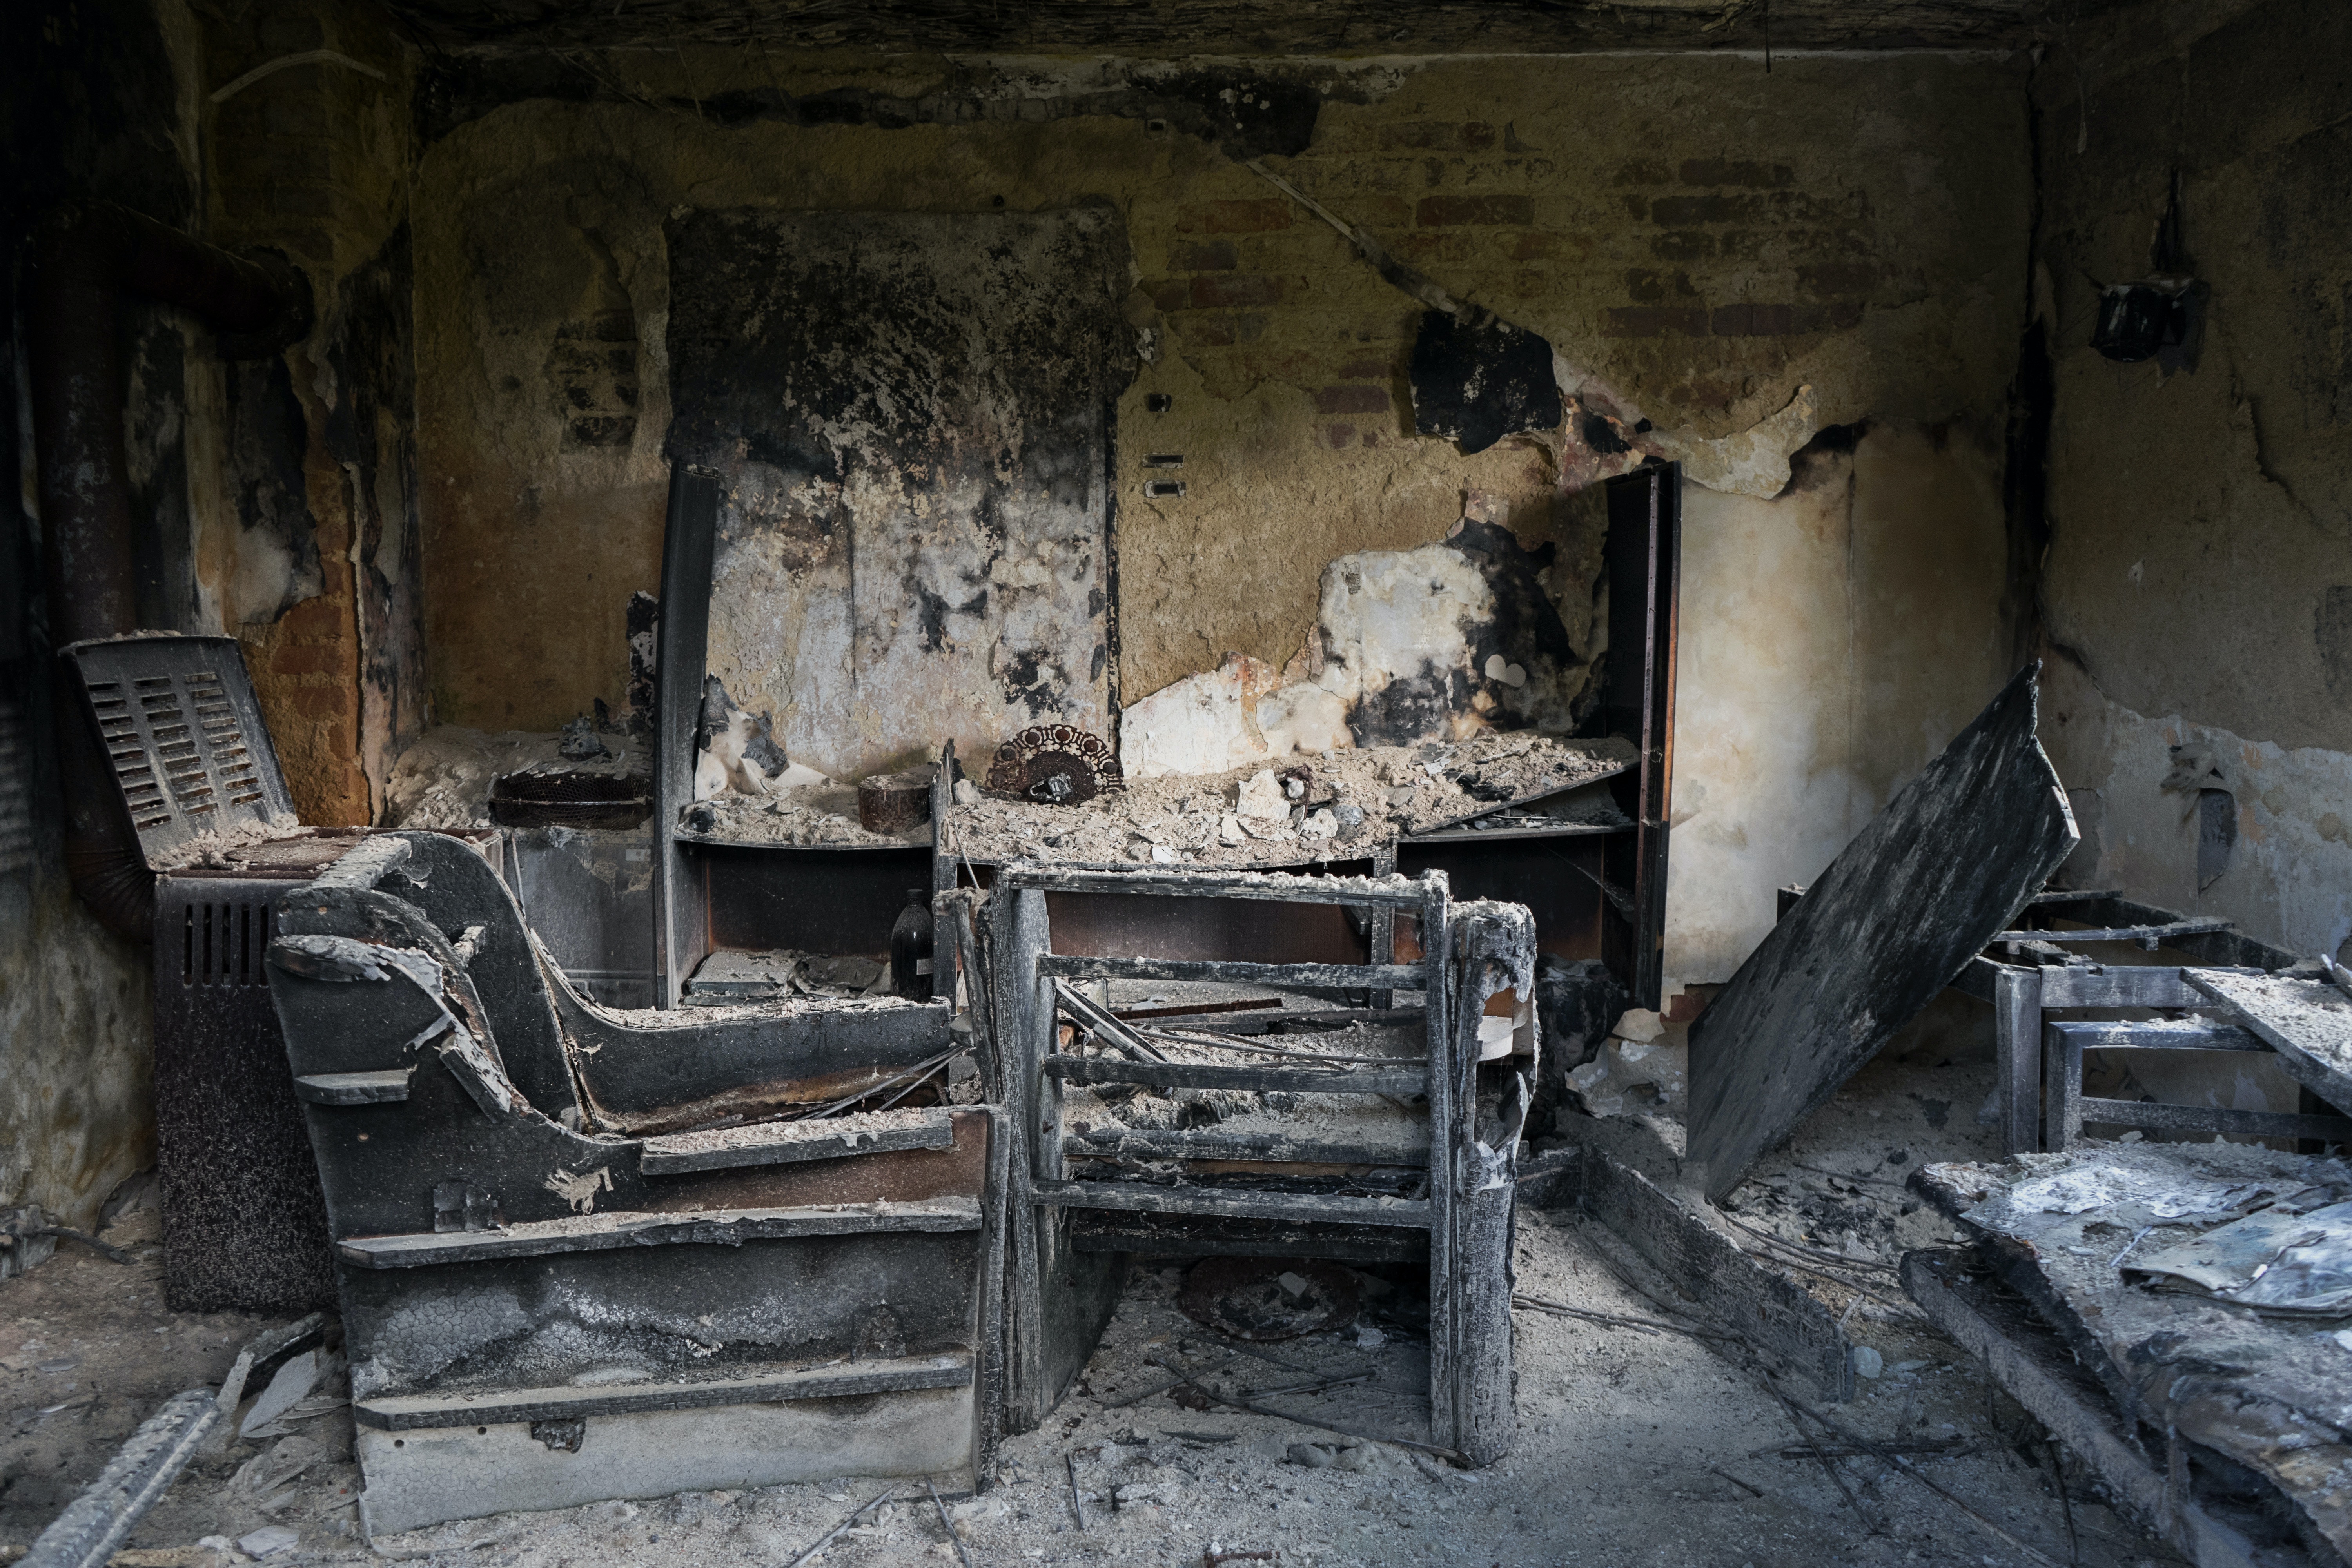 Leur maison familiale a brûlé. | Source : Pexels